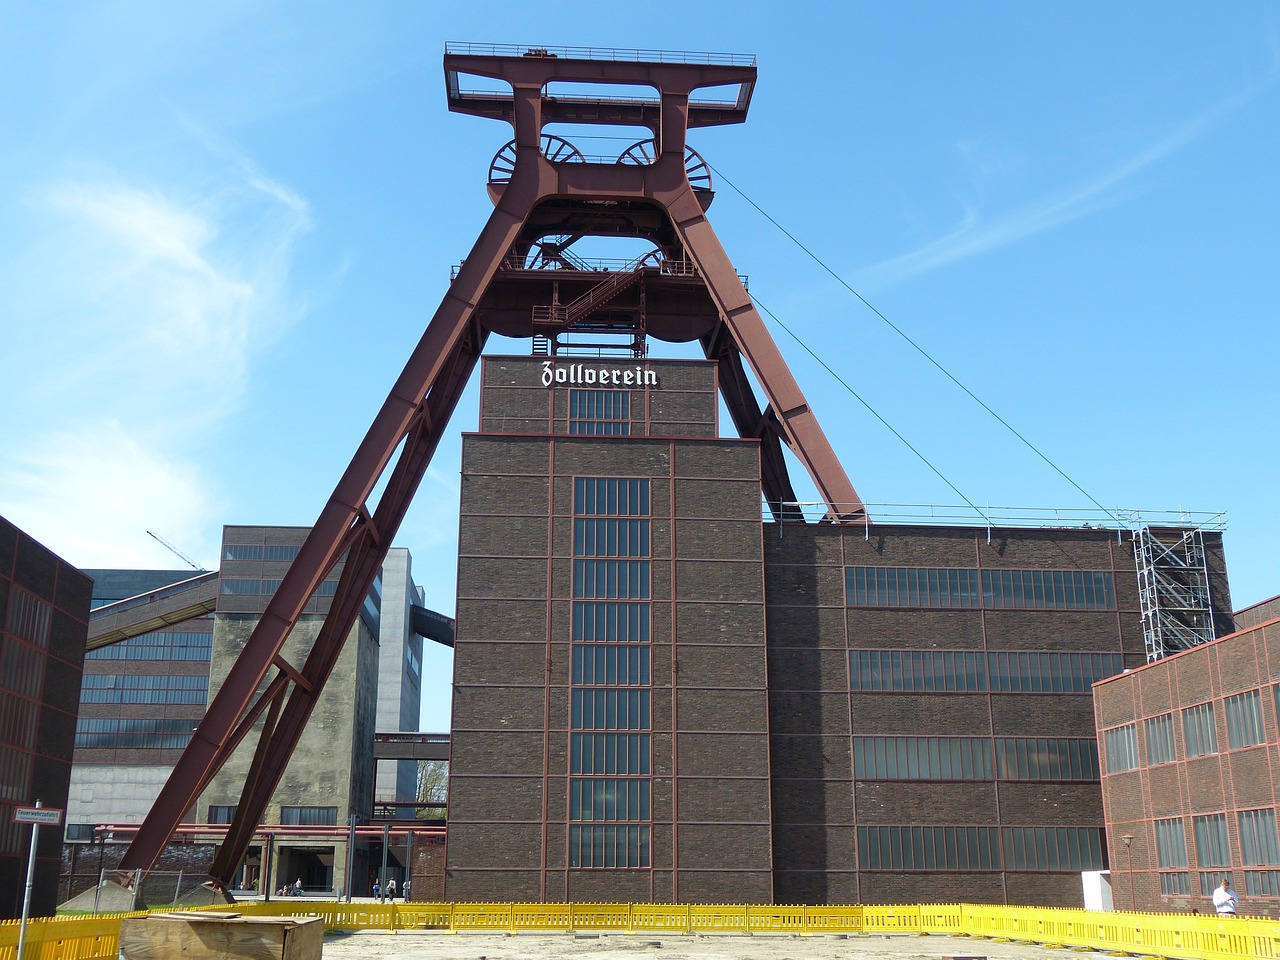 ¿Quién creó la Zollverein?